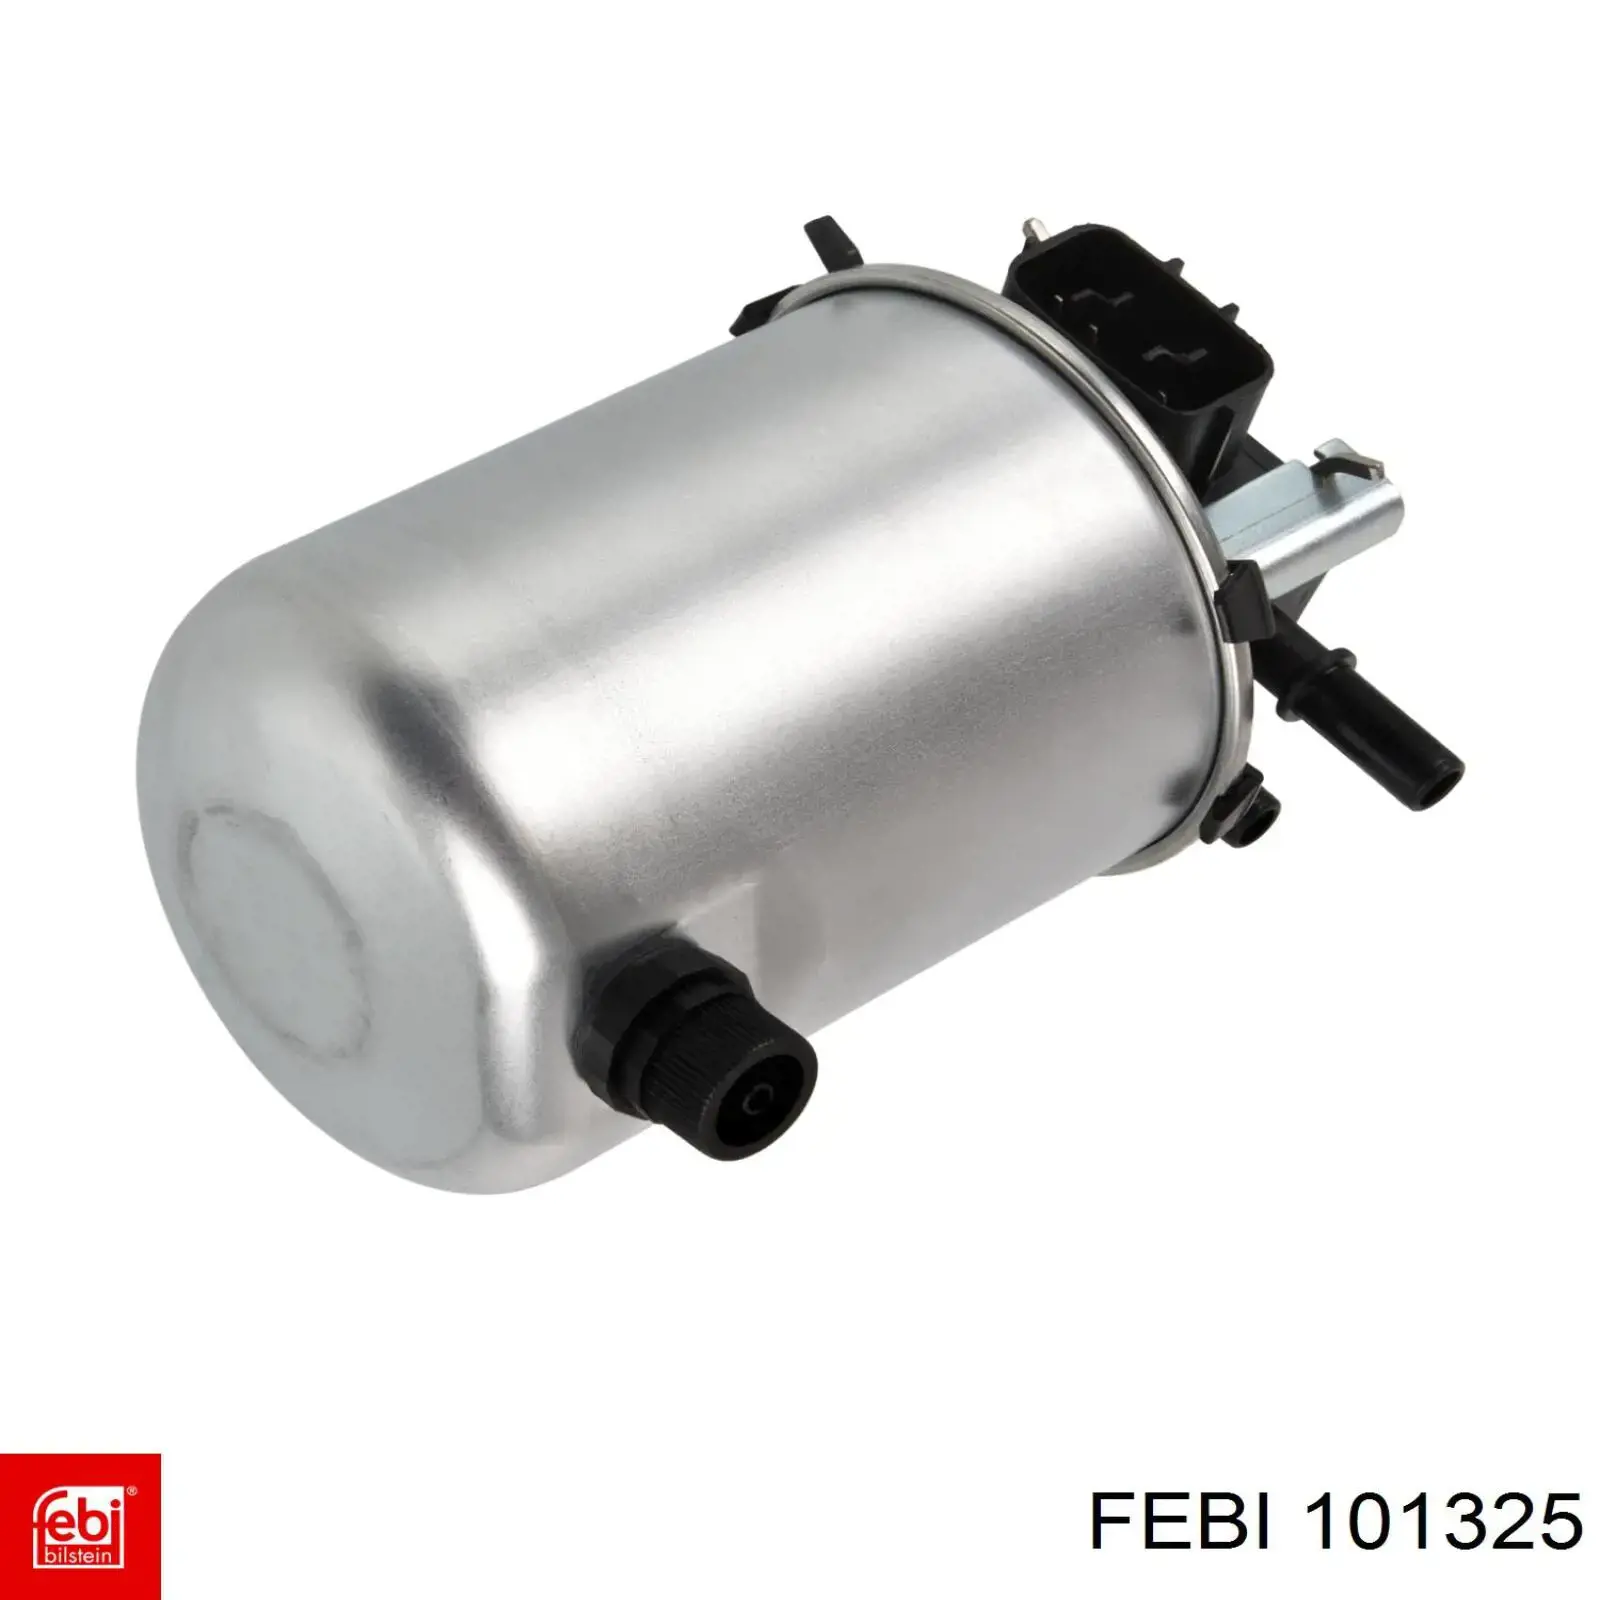 101325 Febi filtro de combustible